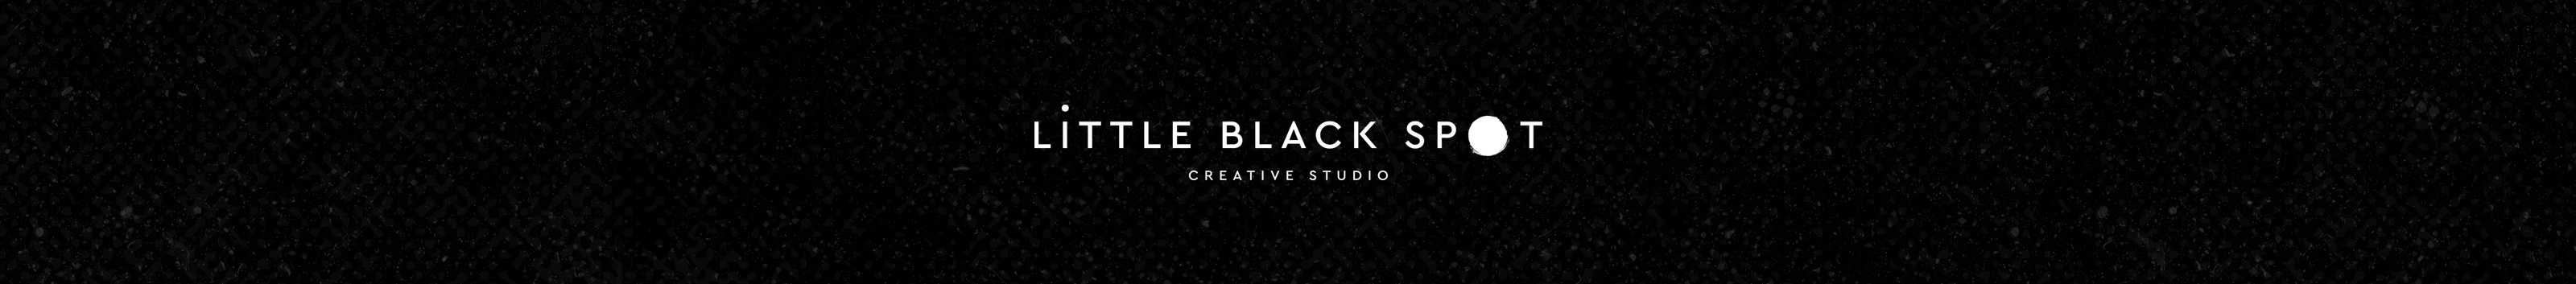 Little Black Spot Studio's profile banner